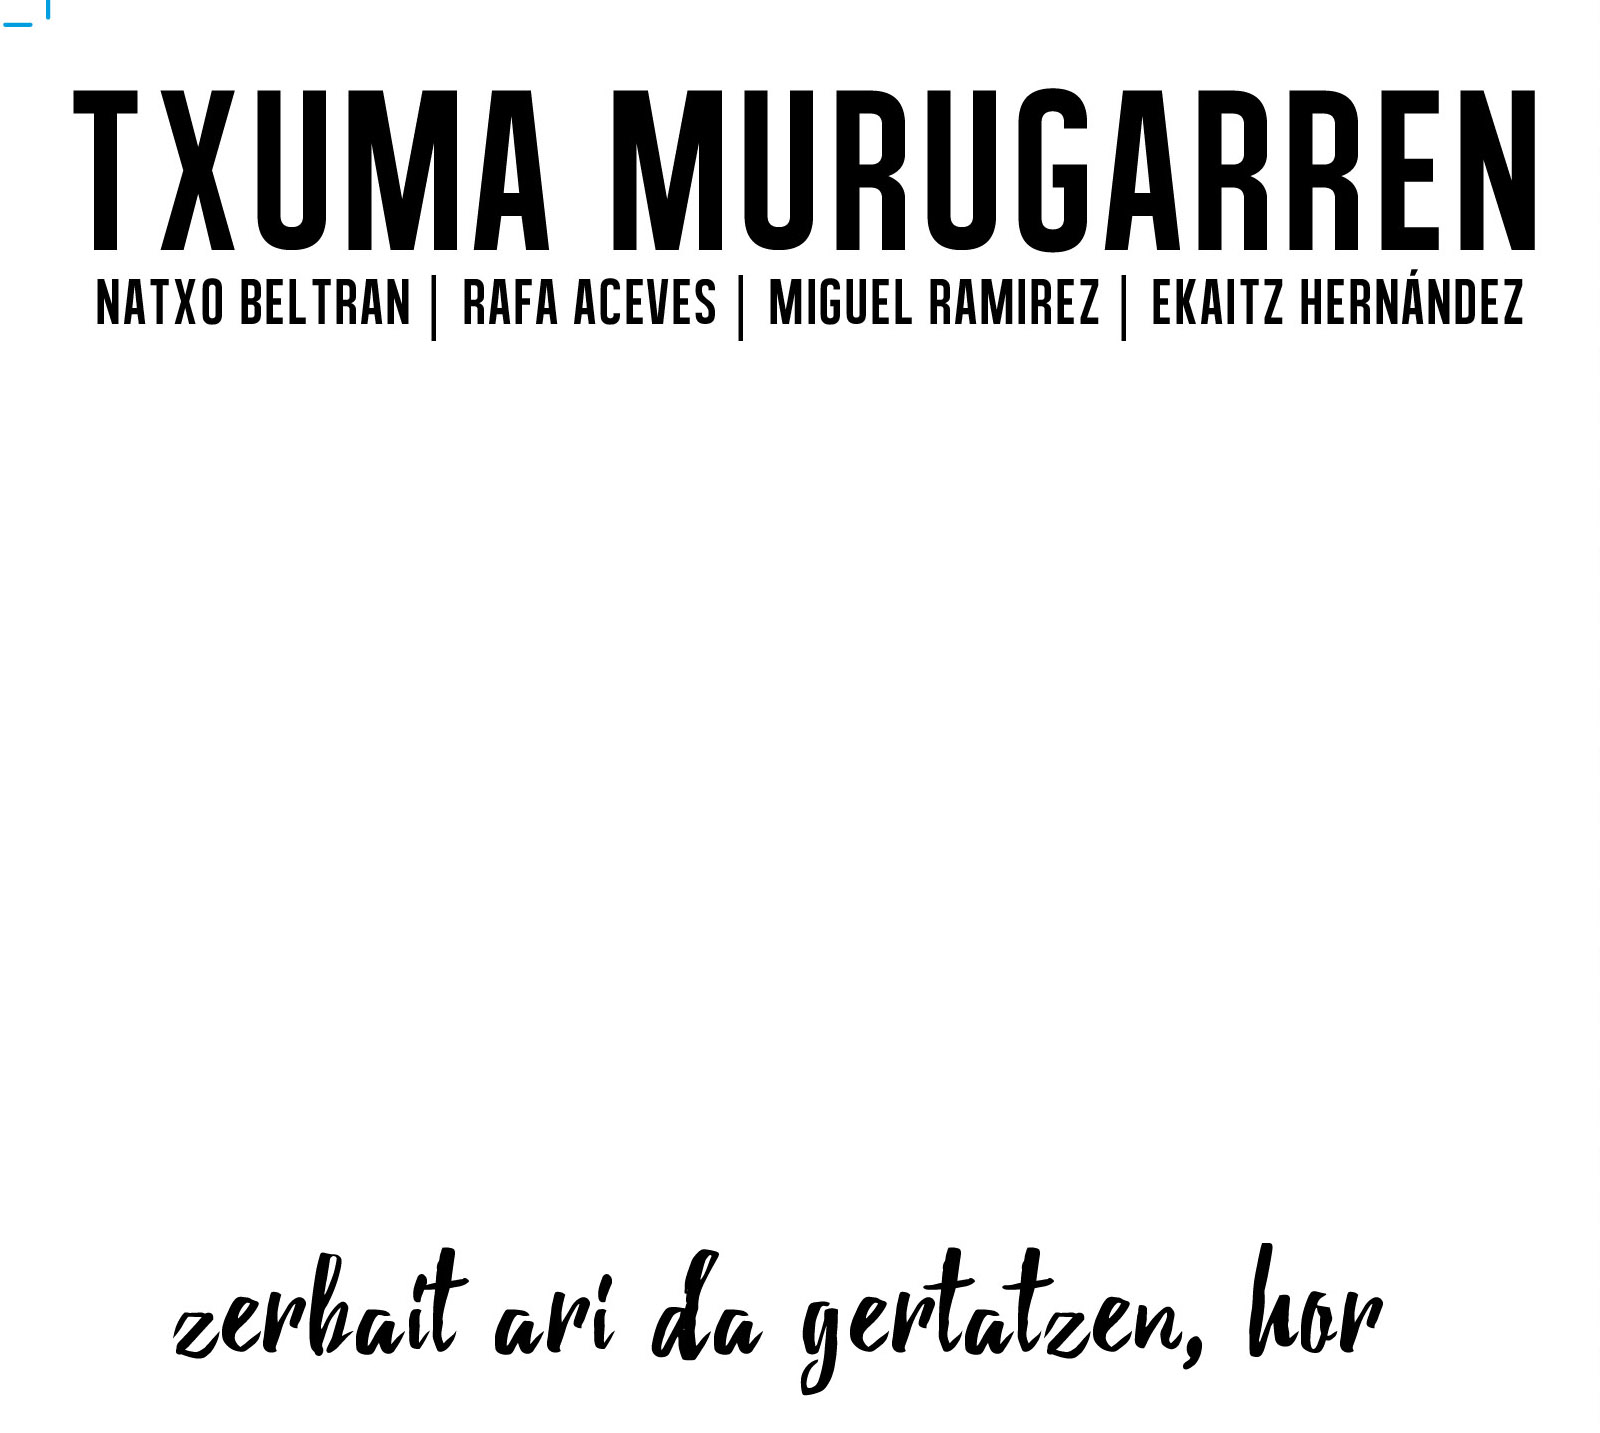 Txuma Murugarren azala.pdf